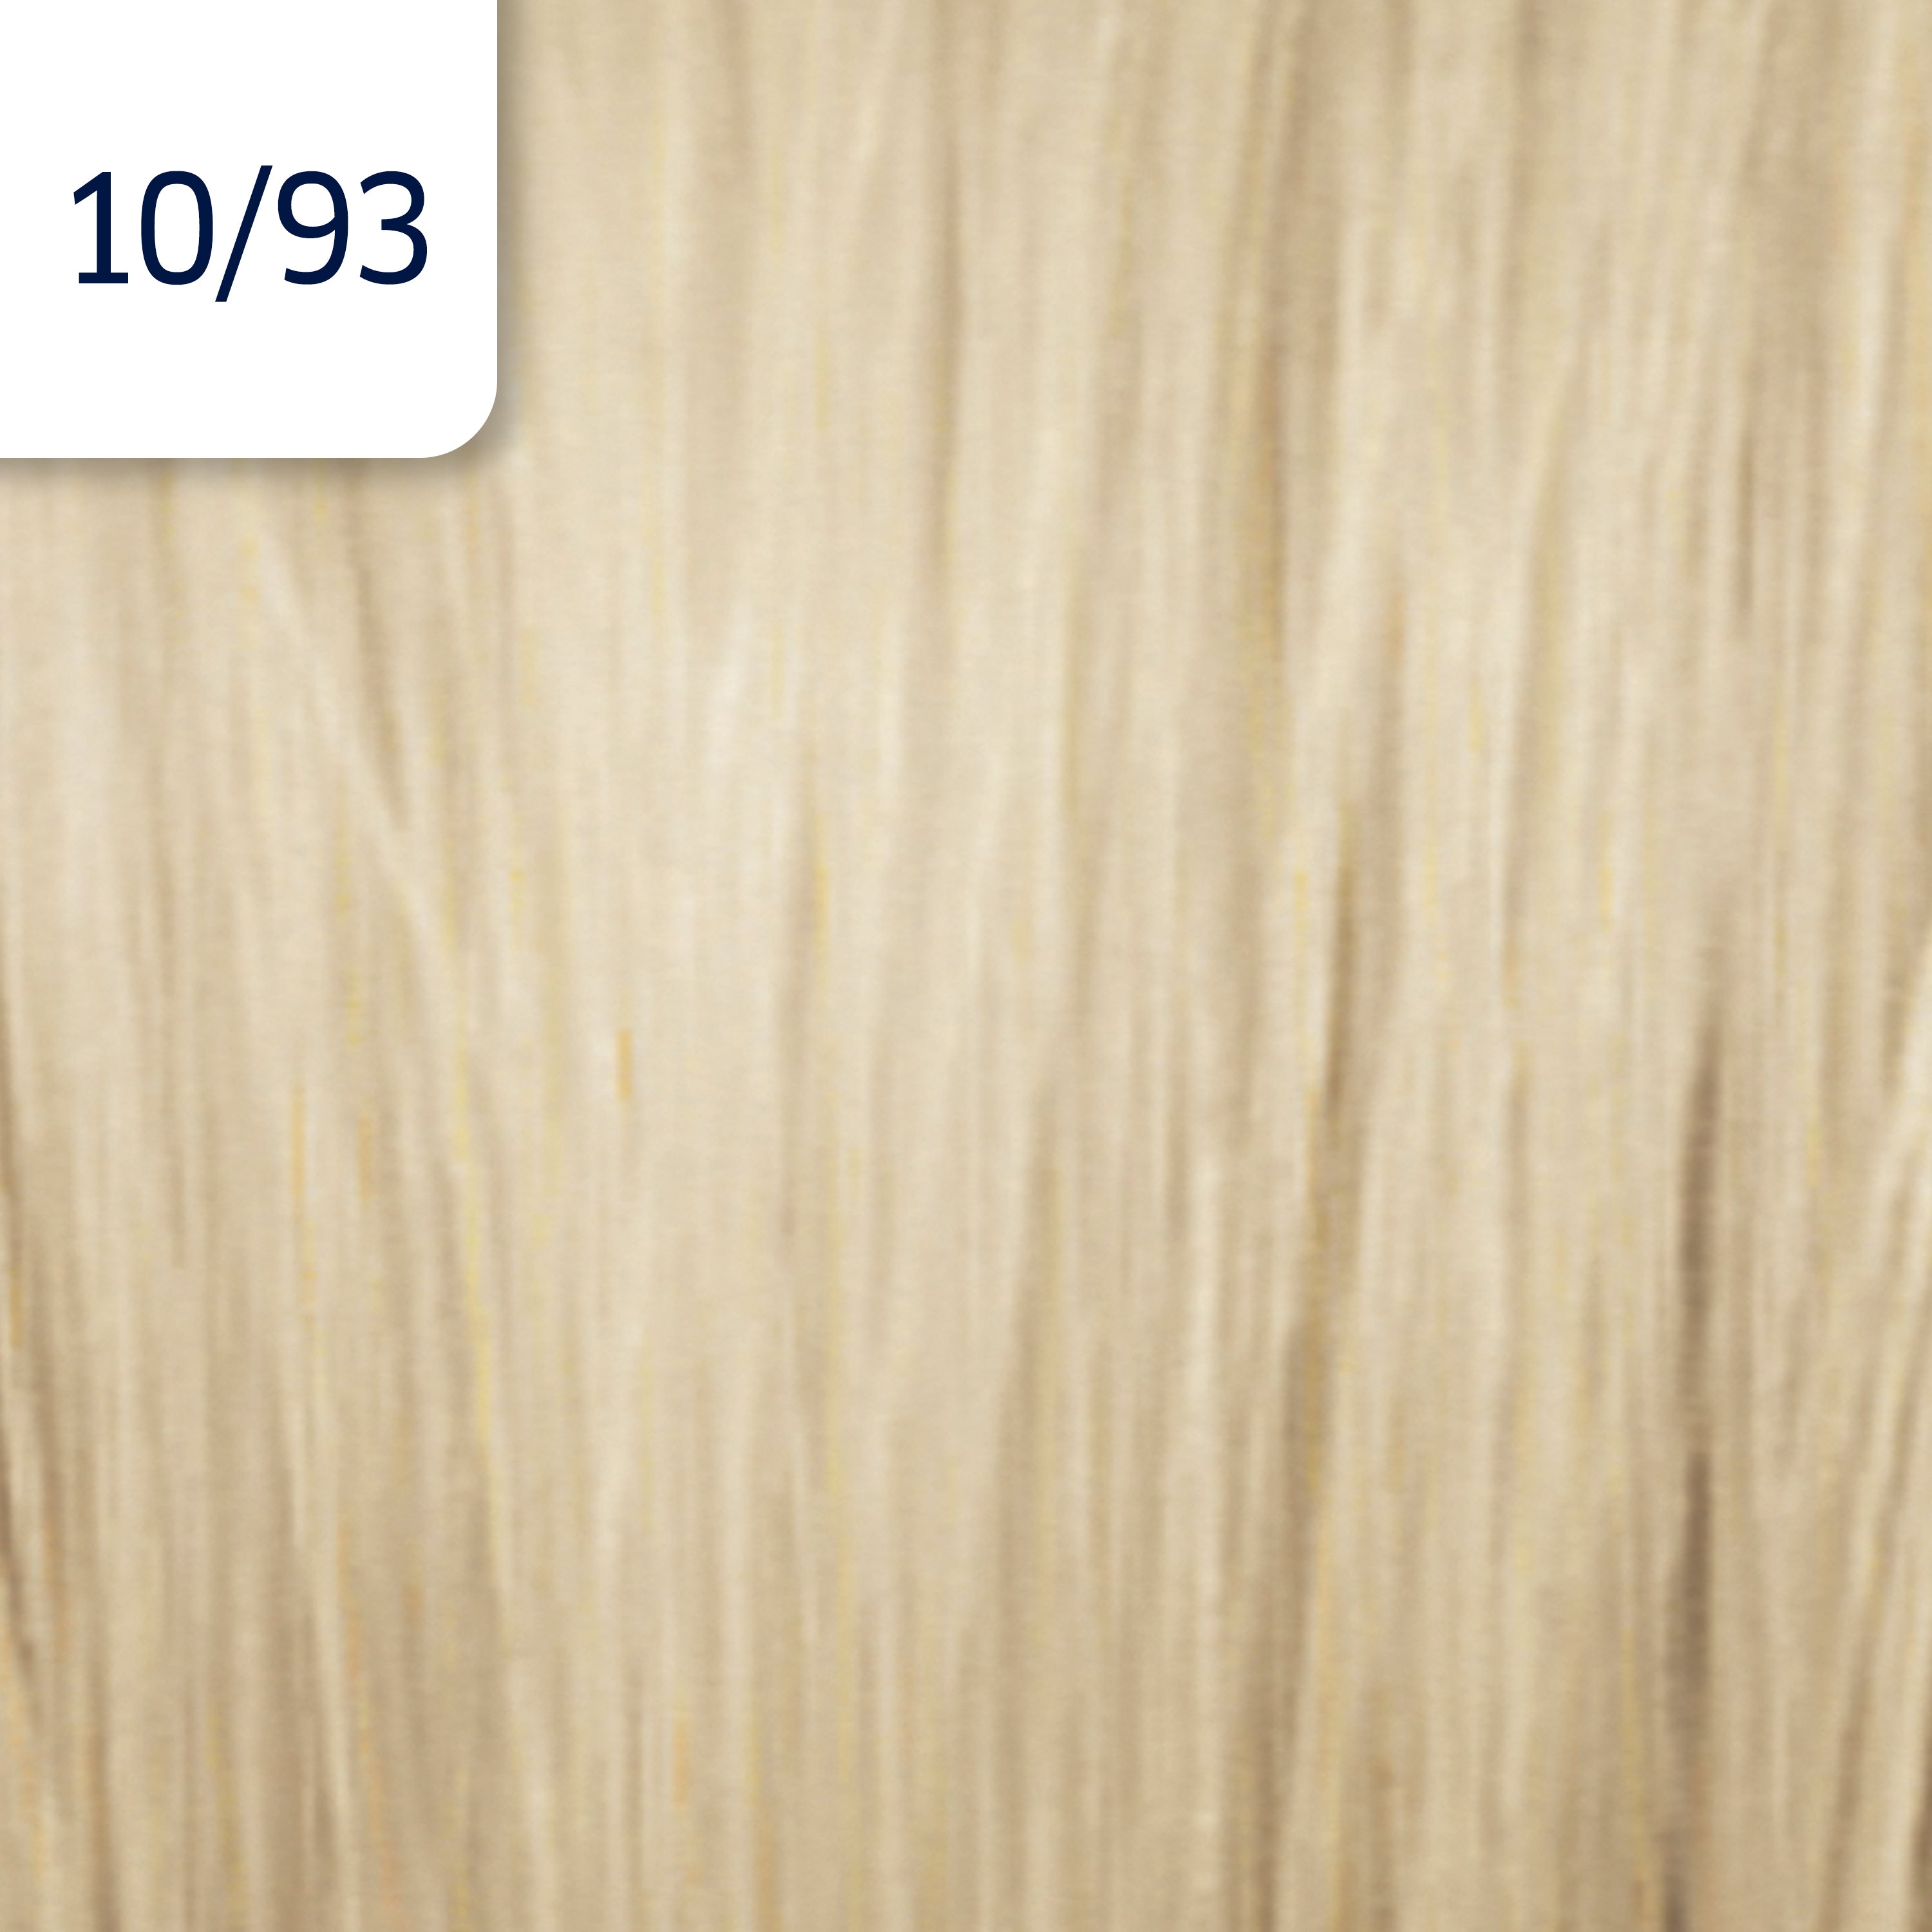 Wella Professional Illumina 10/93 Lättaste Cendre Gold Blonde 60 ml